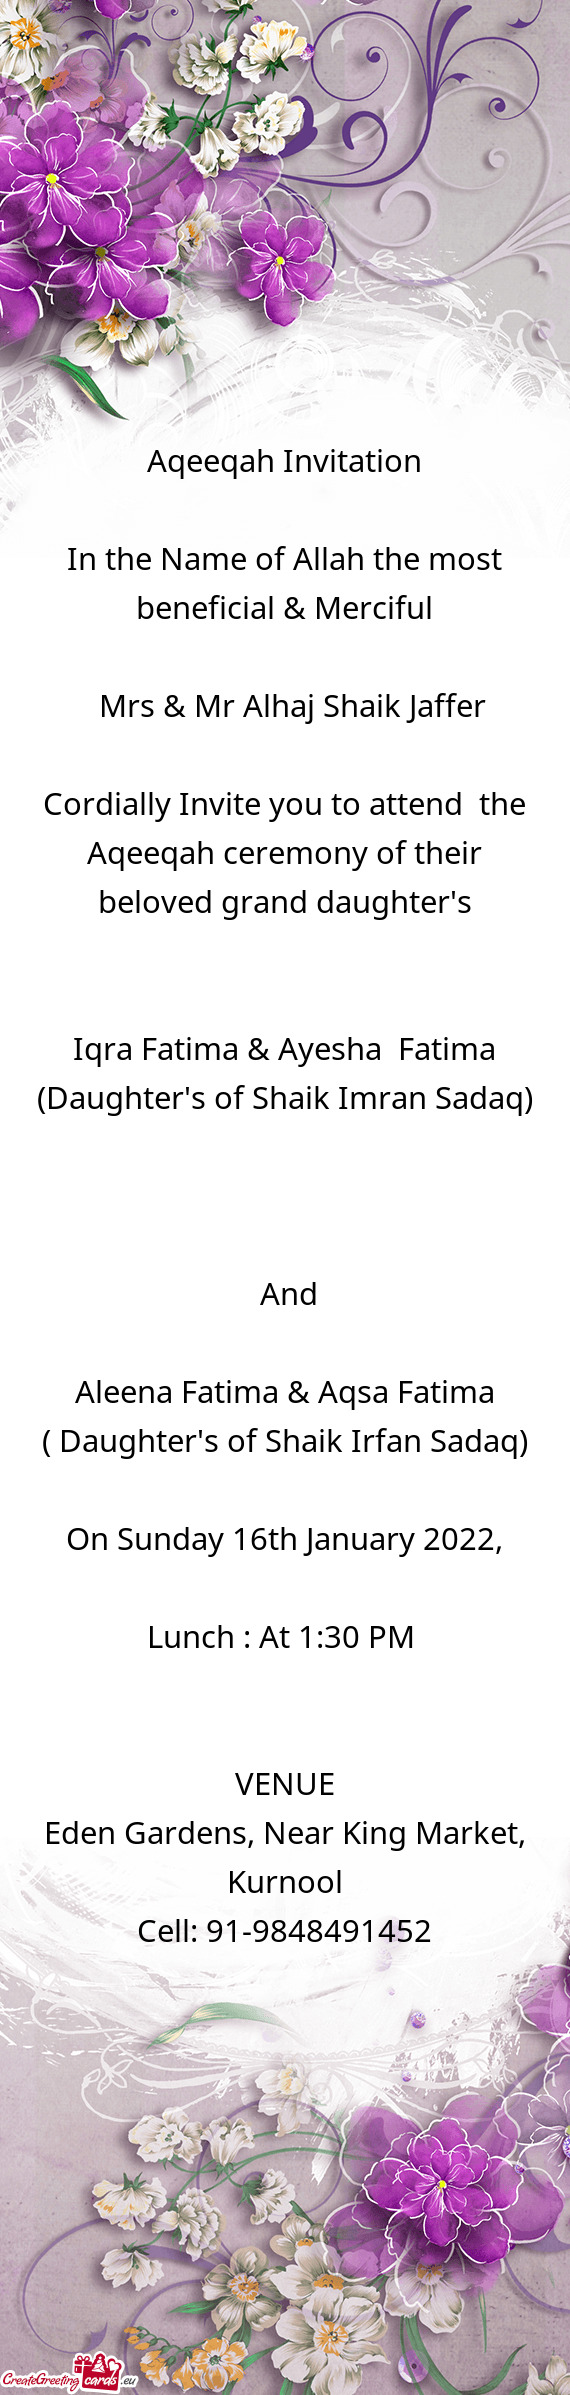 Iqra Fatima & Ayesha Fatima